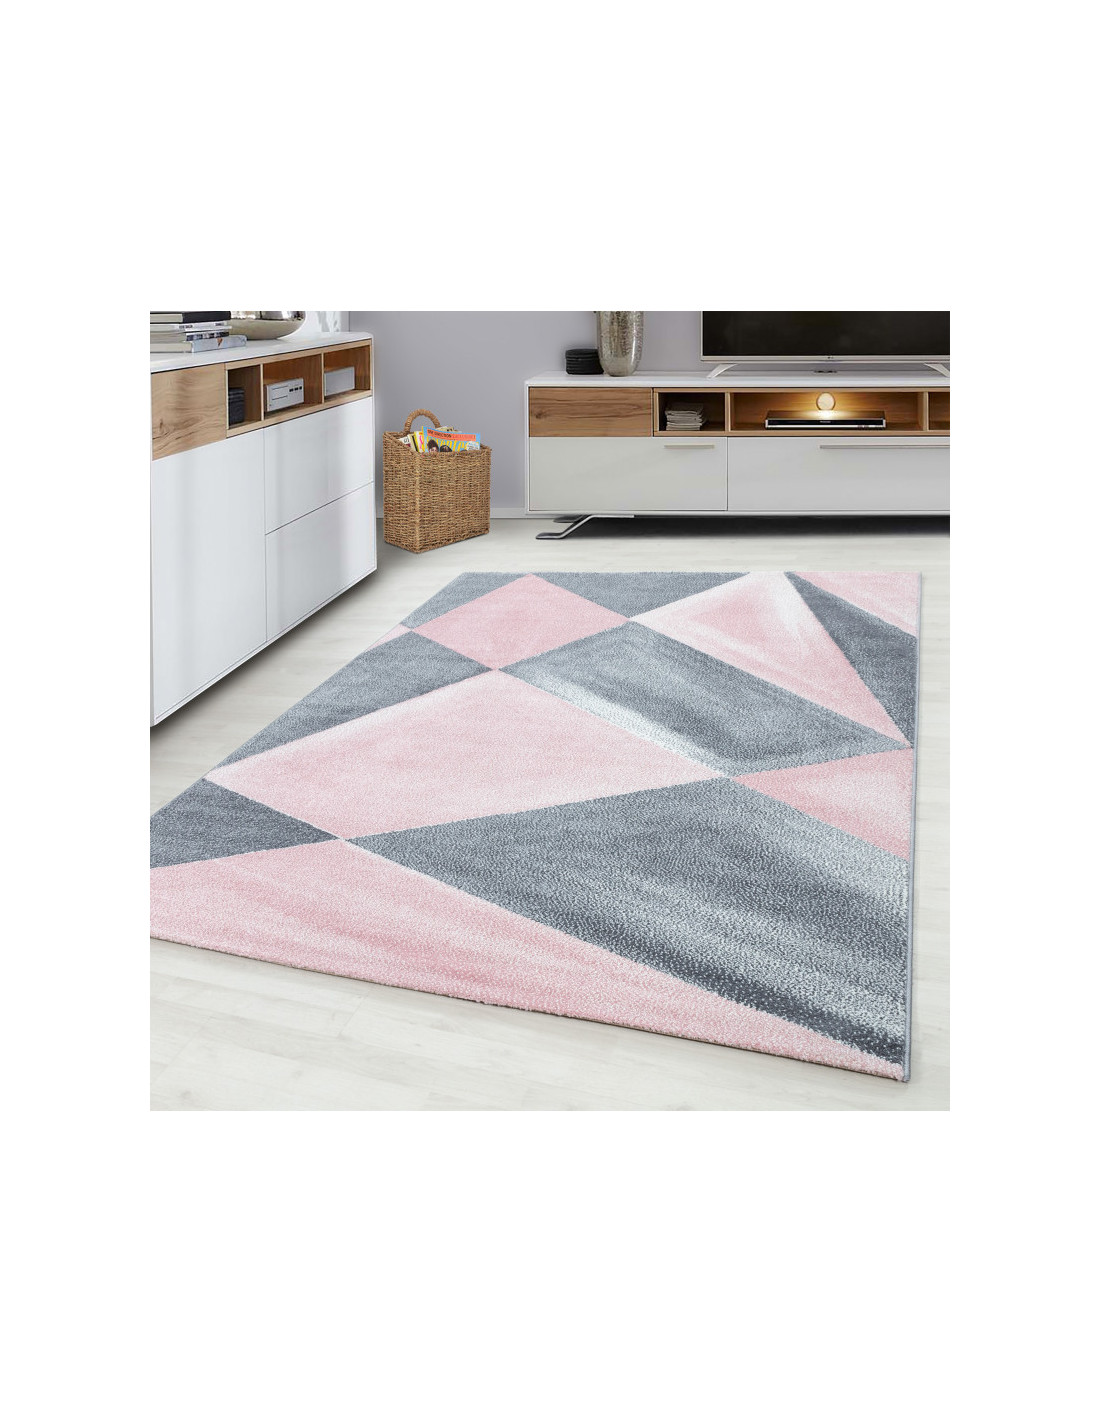 Tappeto da soggiorno moderno e di design rosa